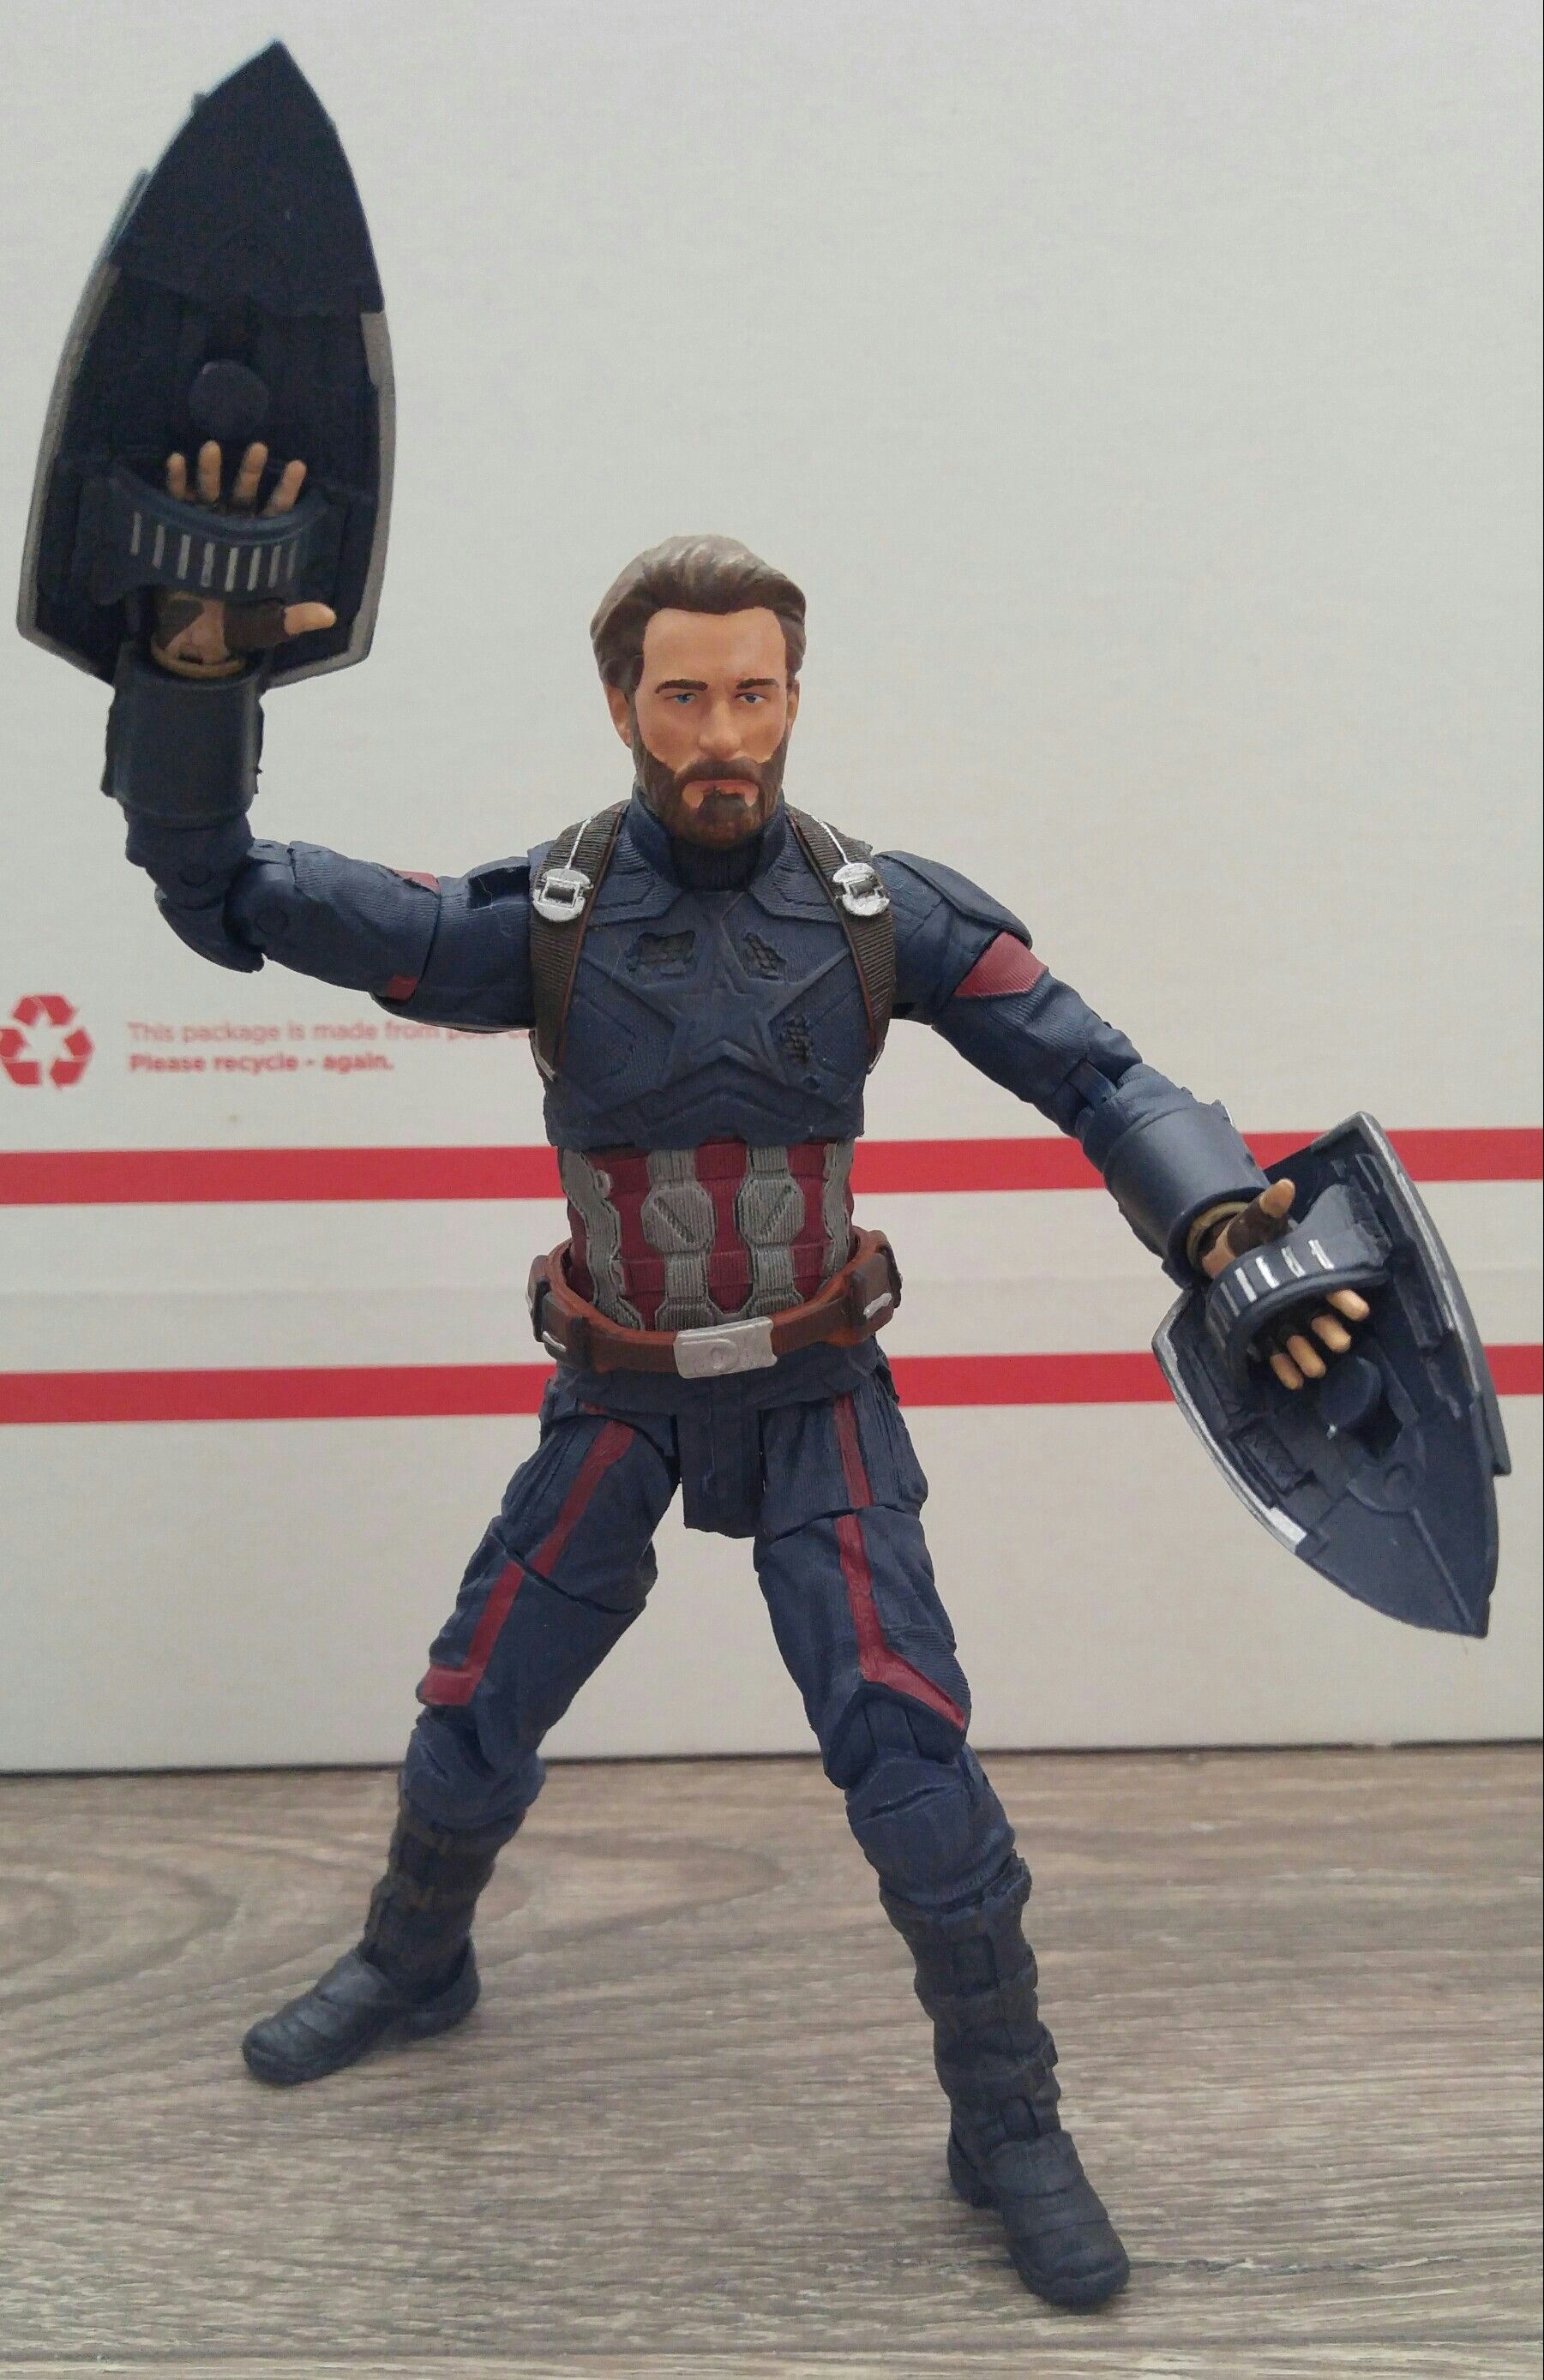 Marvel Select Avengers Infinity War Captain America